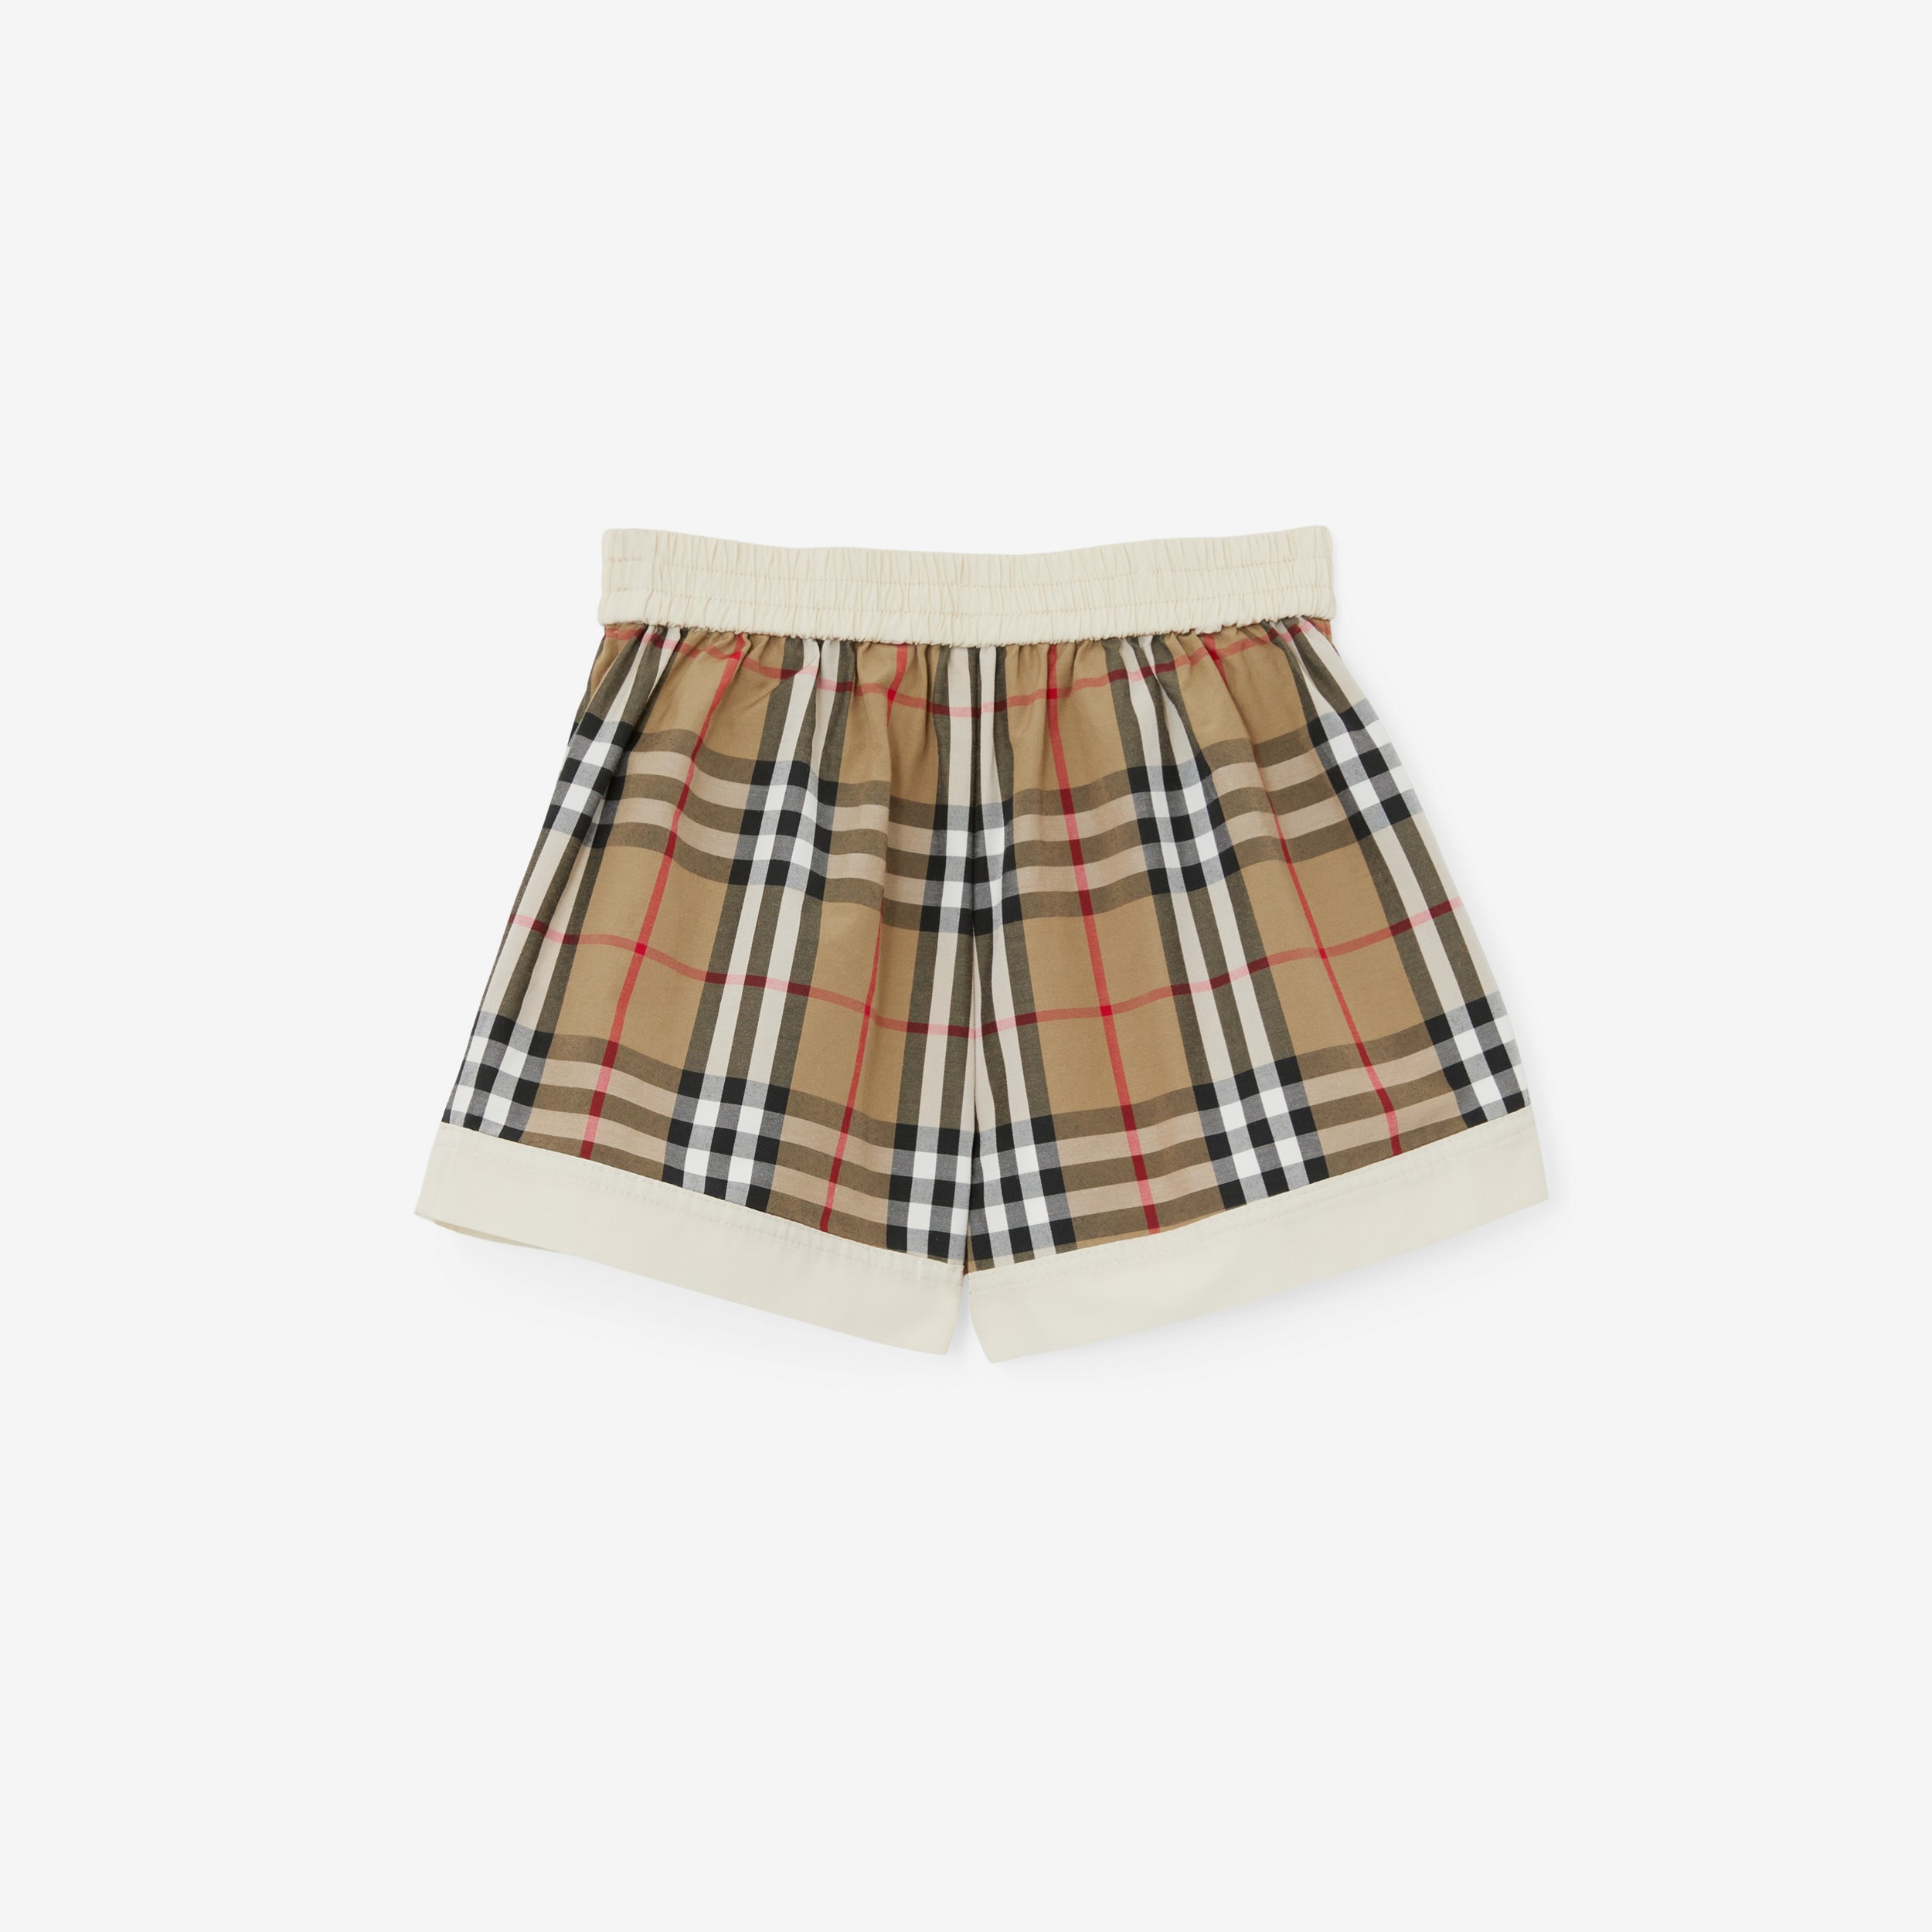 Baumwollmisch-Shorts mit Vintage Check-Panel (Helles Cremefarben) - Kinder | Burberry® - 2